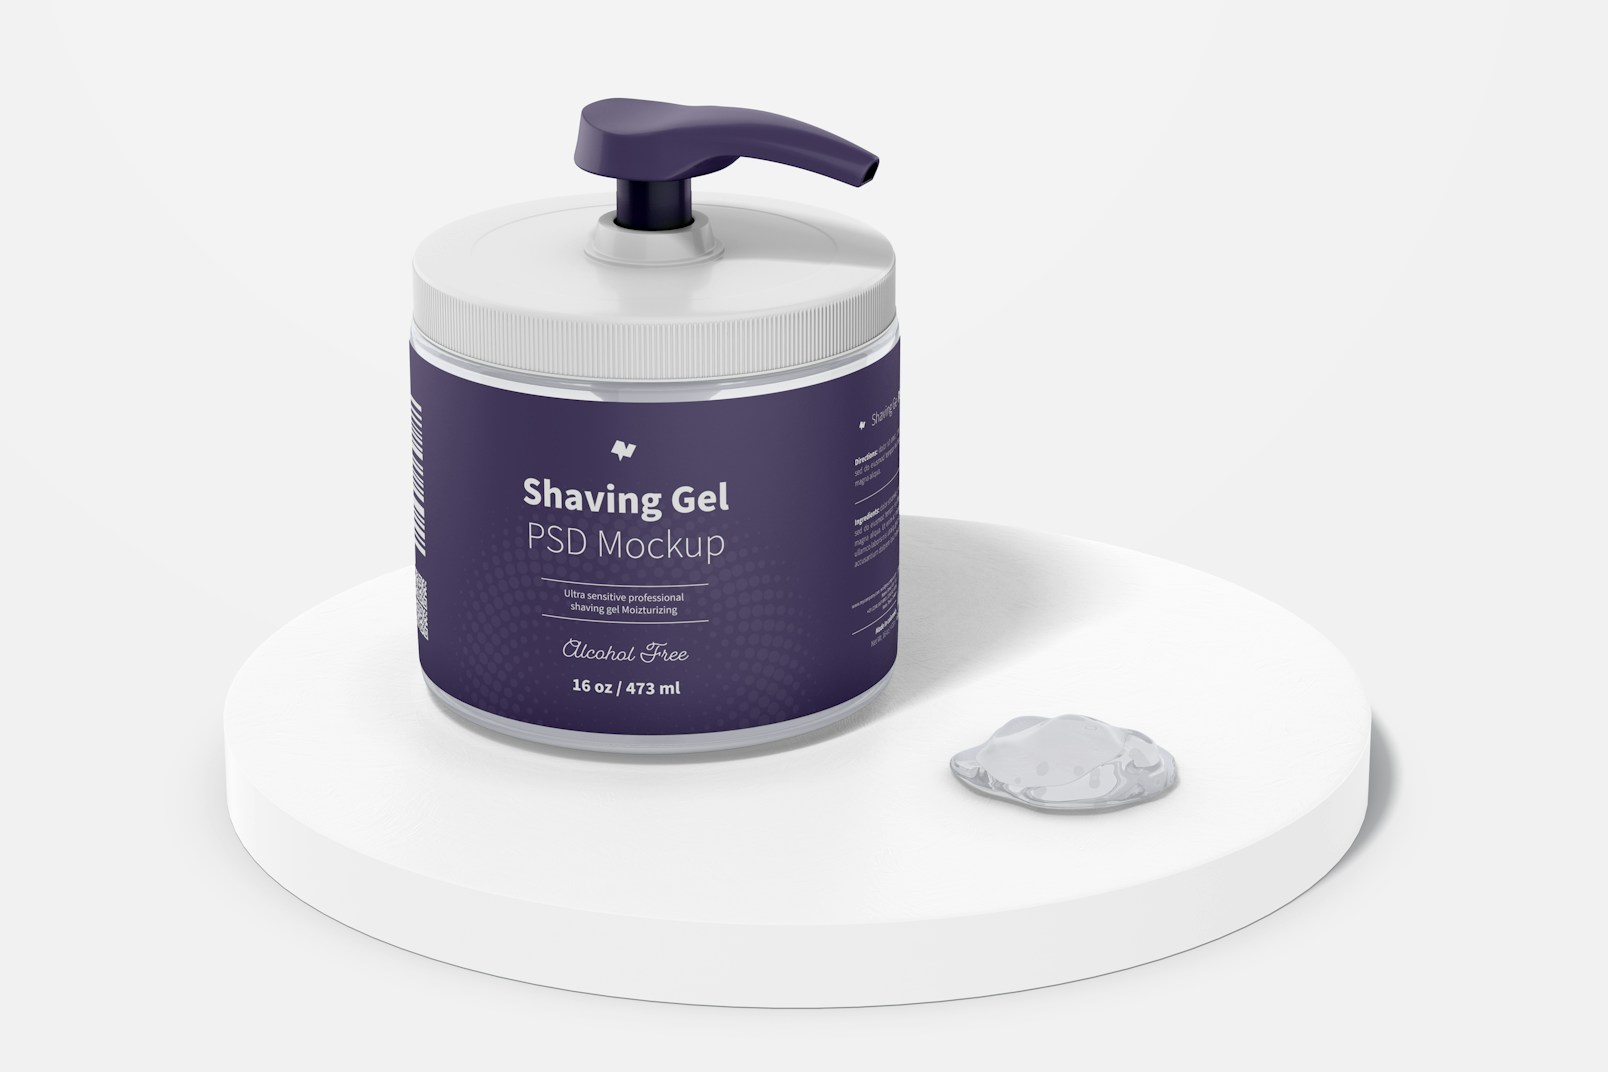 16 oz Shaving Gel Mockup, on Surface